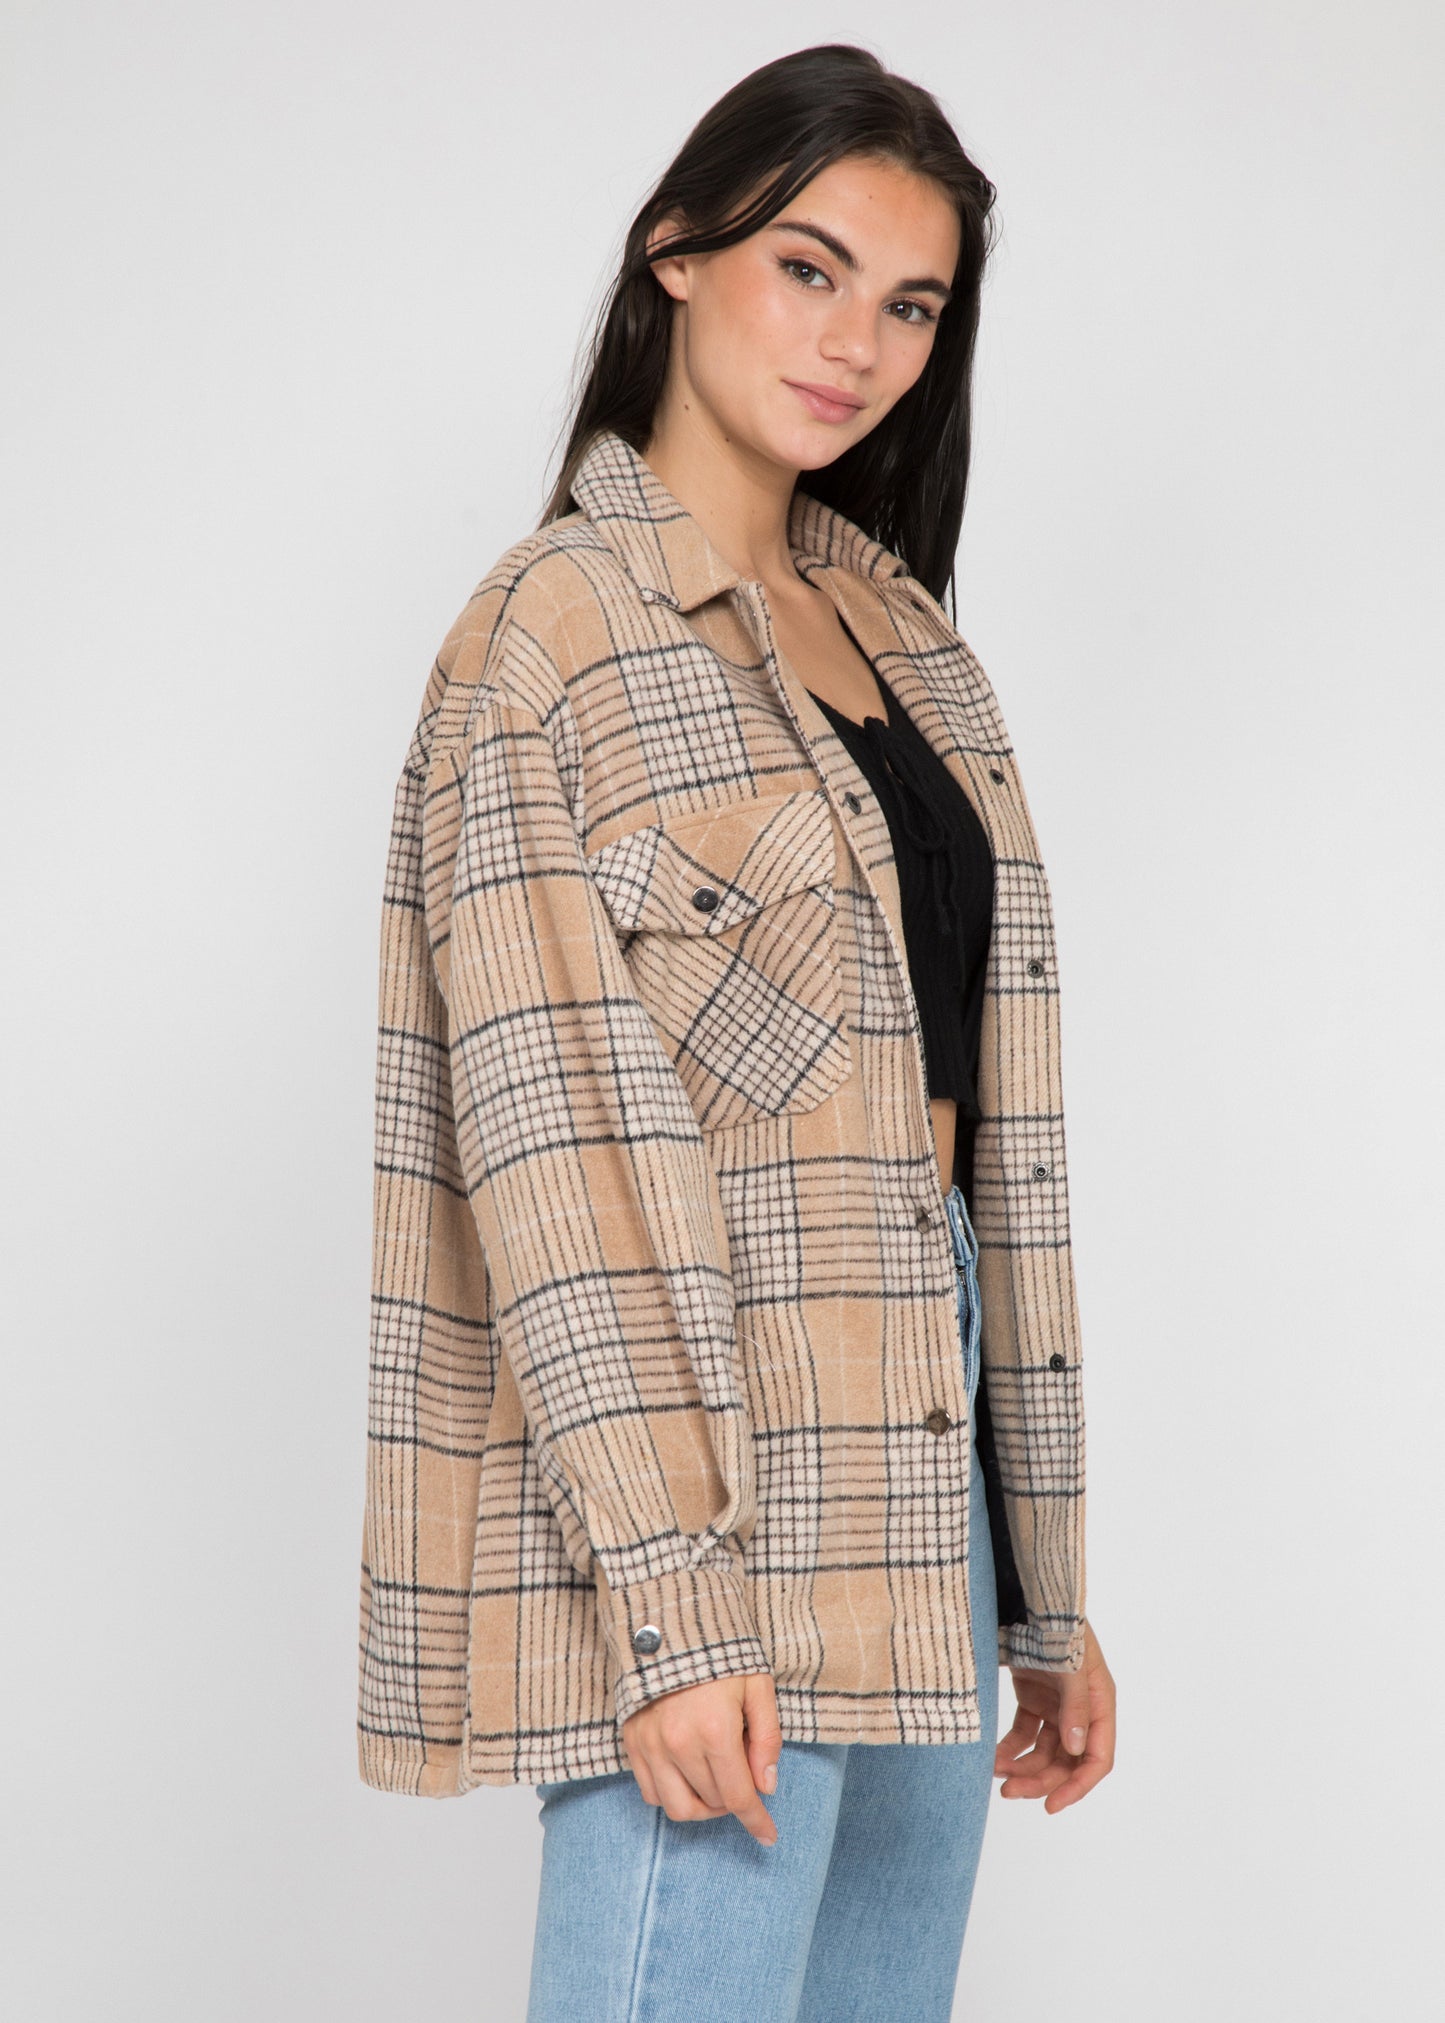 Beige checkered jacket